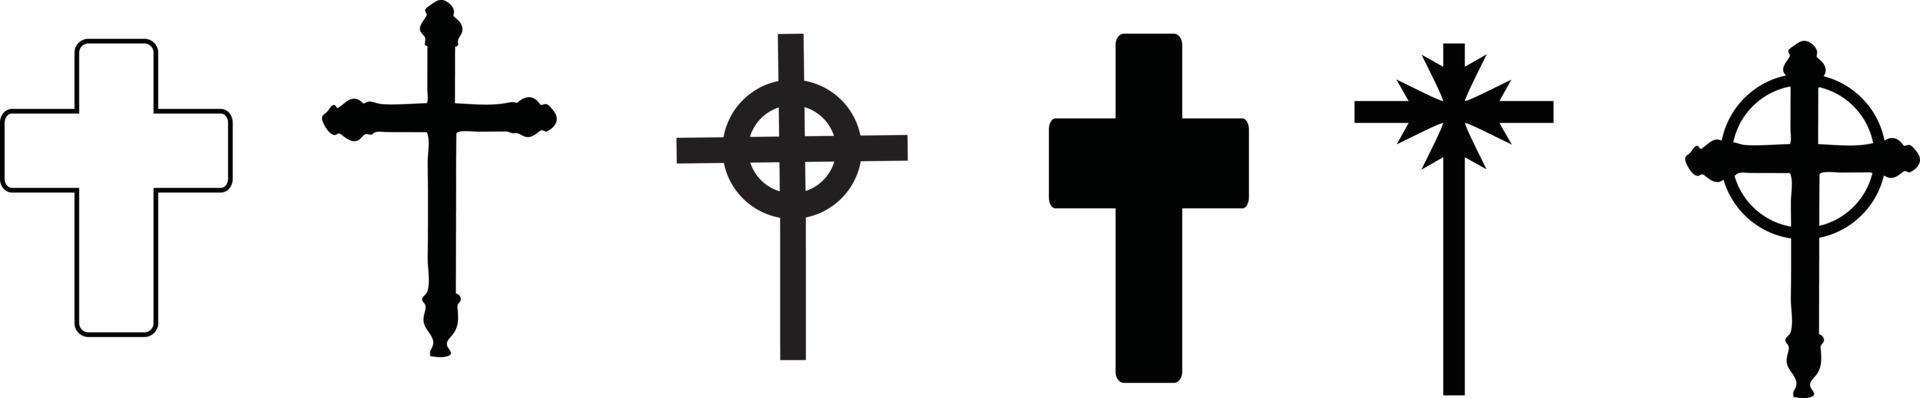 collezione di icone della croce cristiana. illustrazione vettoriale